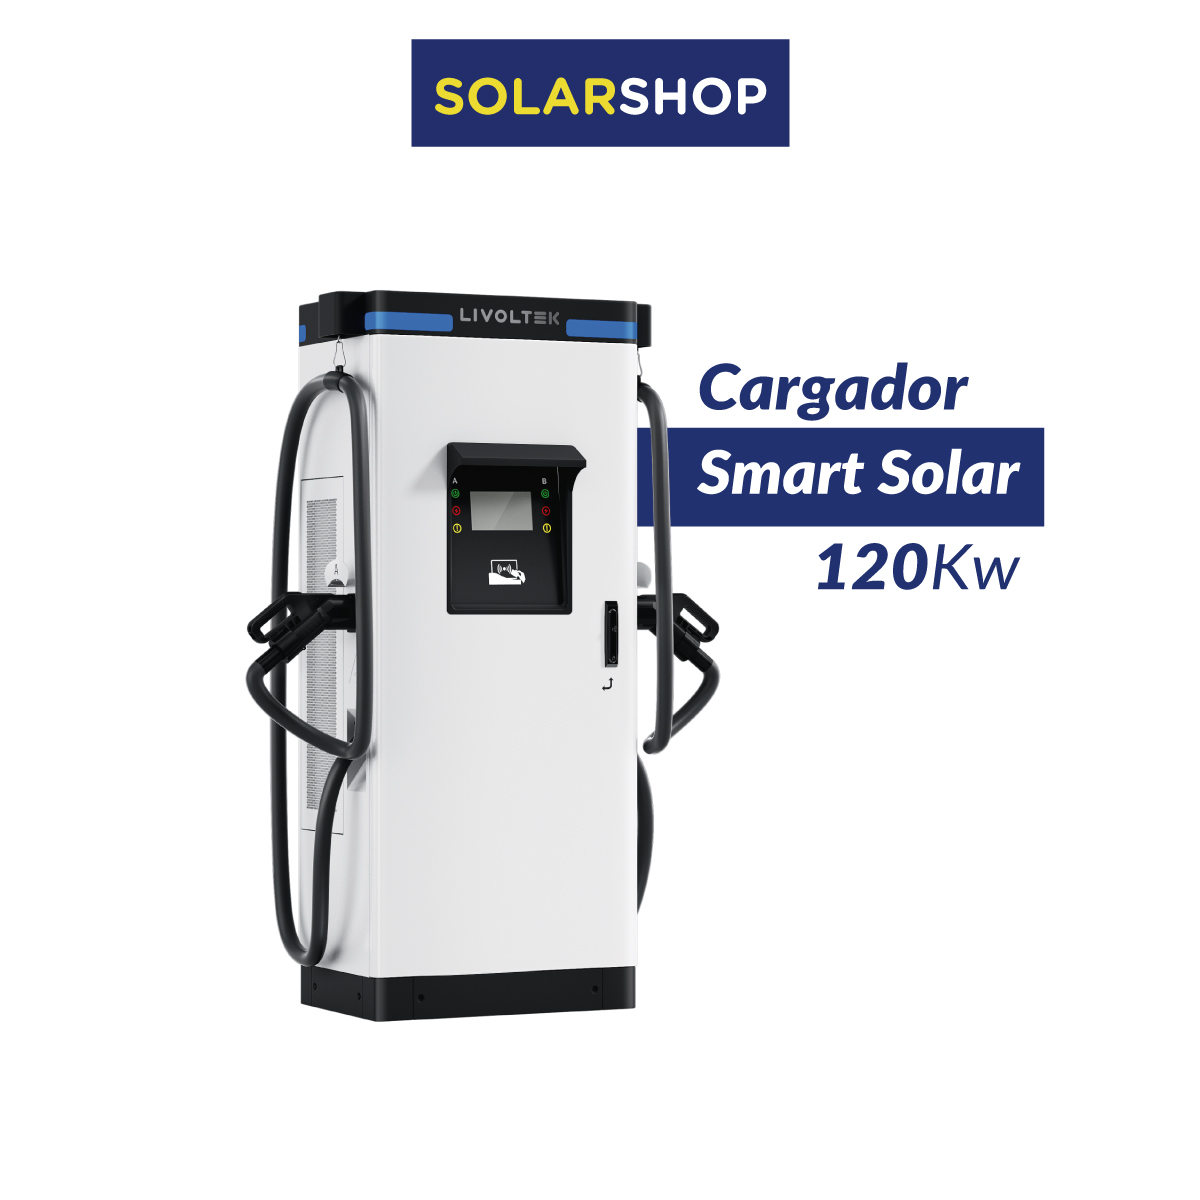 Cargador Smart Solar - 120kW